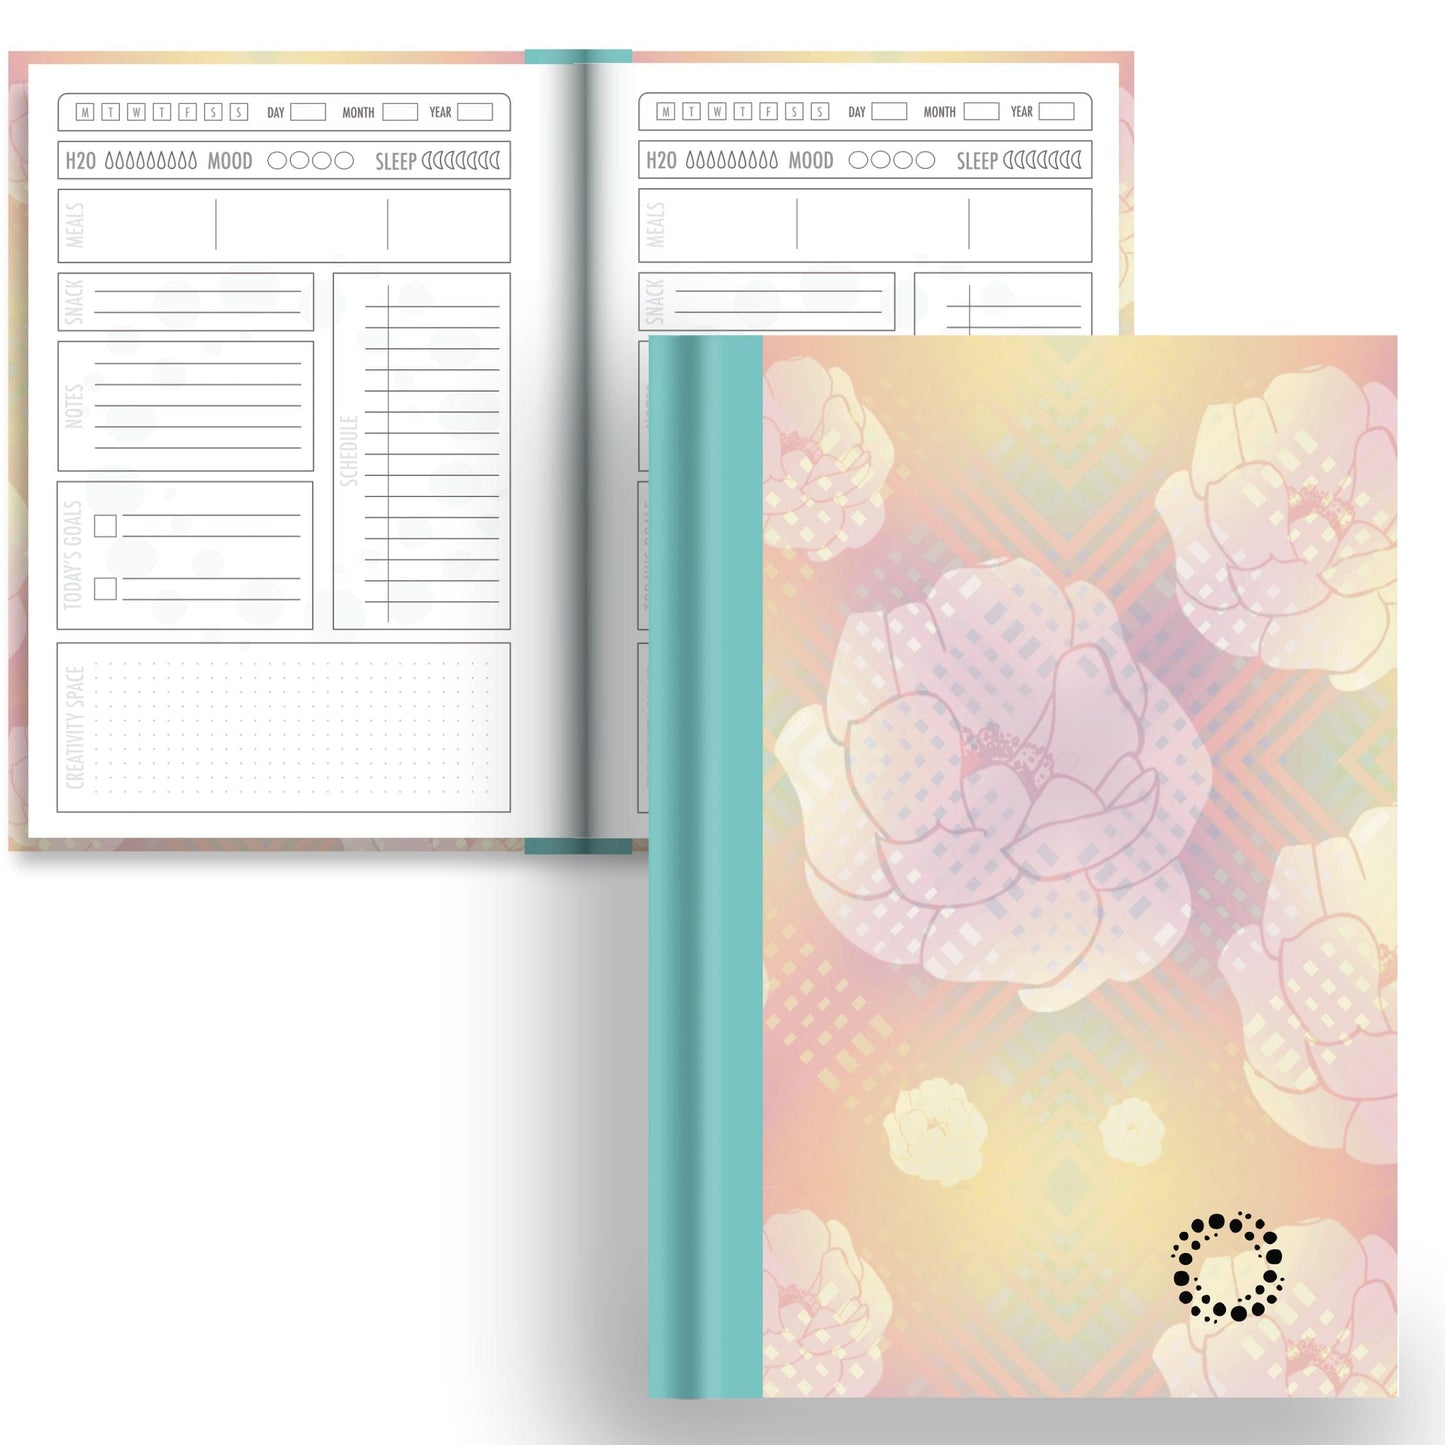 DayDot Journals A5 Notebook Daily Planner Mellow Orchard -  A5 Hardback Notebook